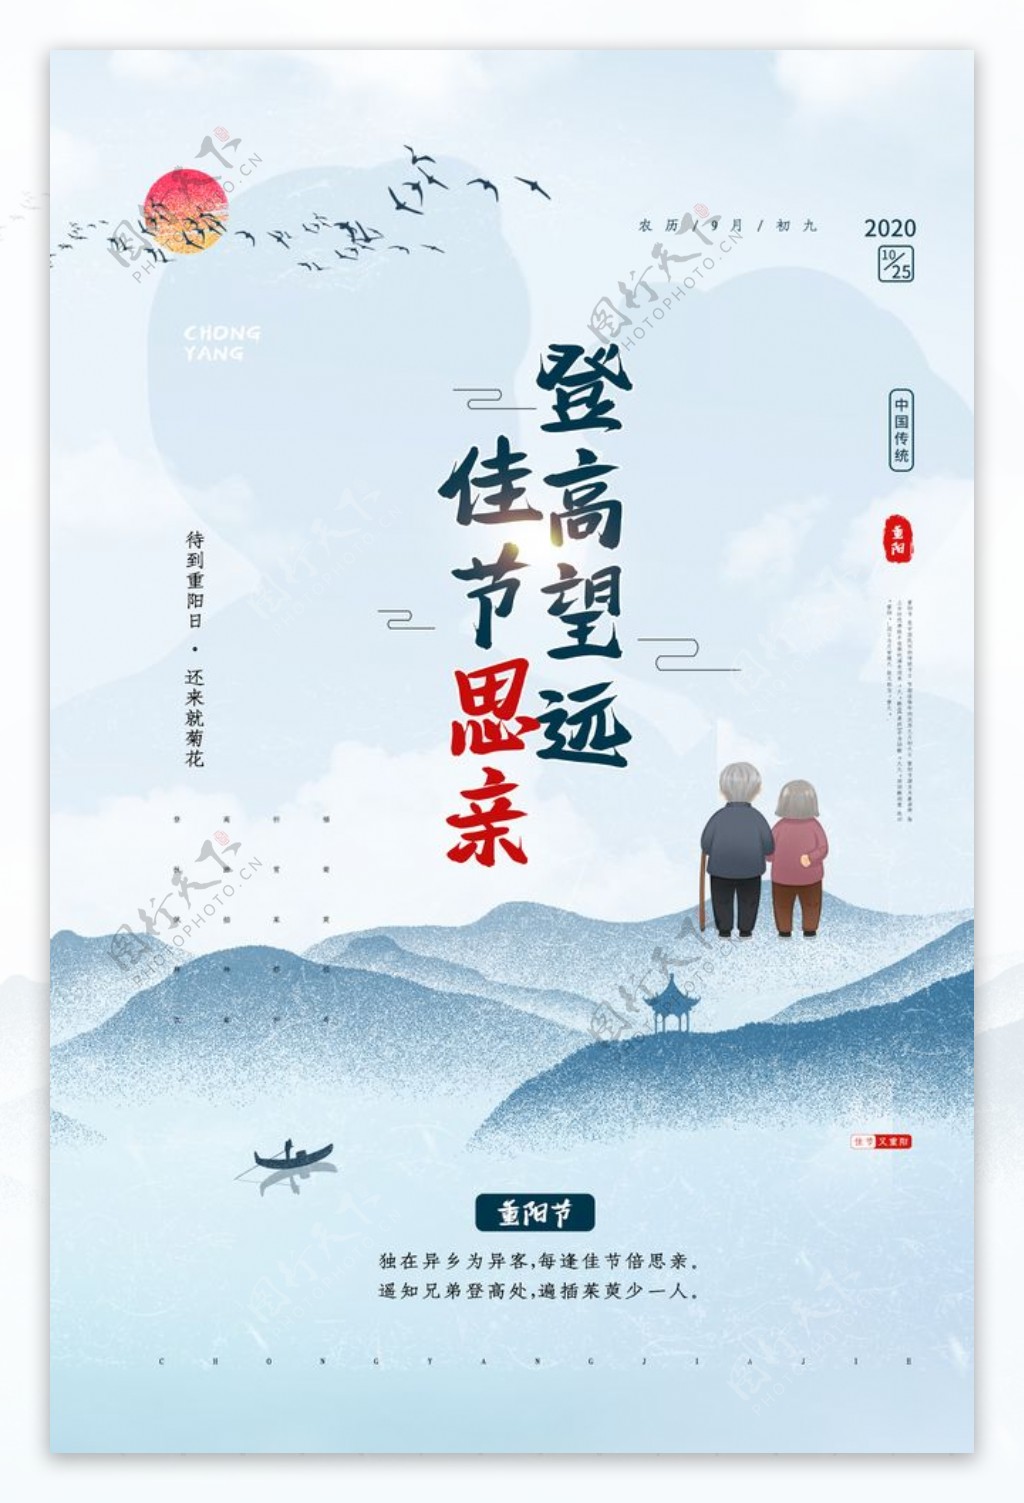 重阳节节日活动促销海报素材图片